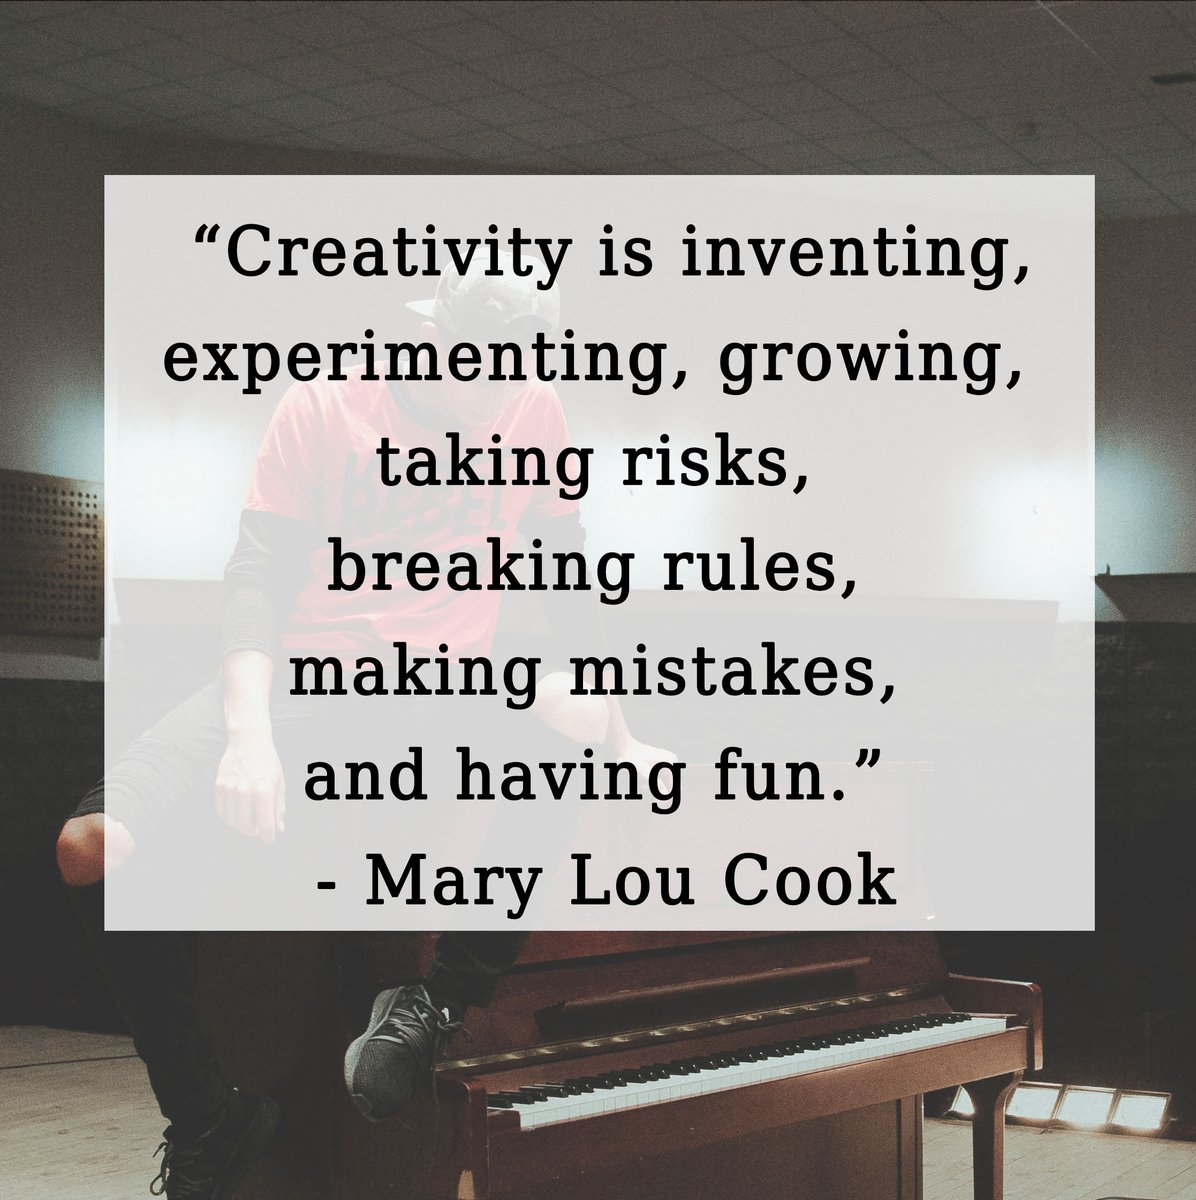 Happy monday and happy practice! #creativity #creativequotes #quoteoftheday